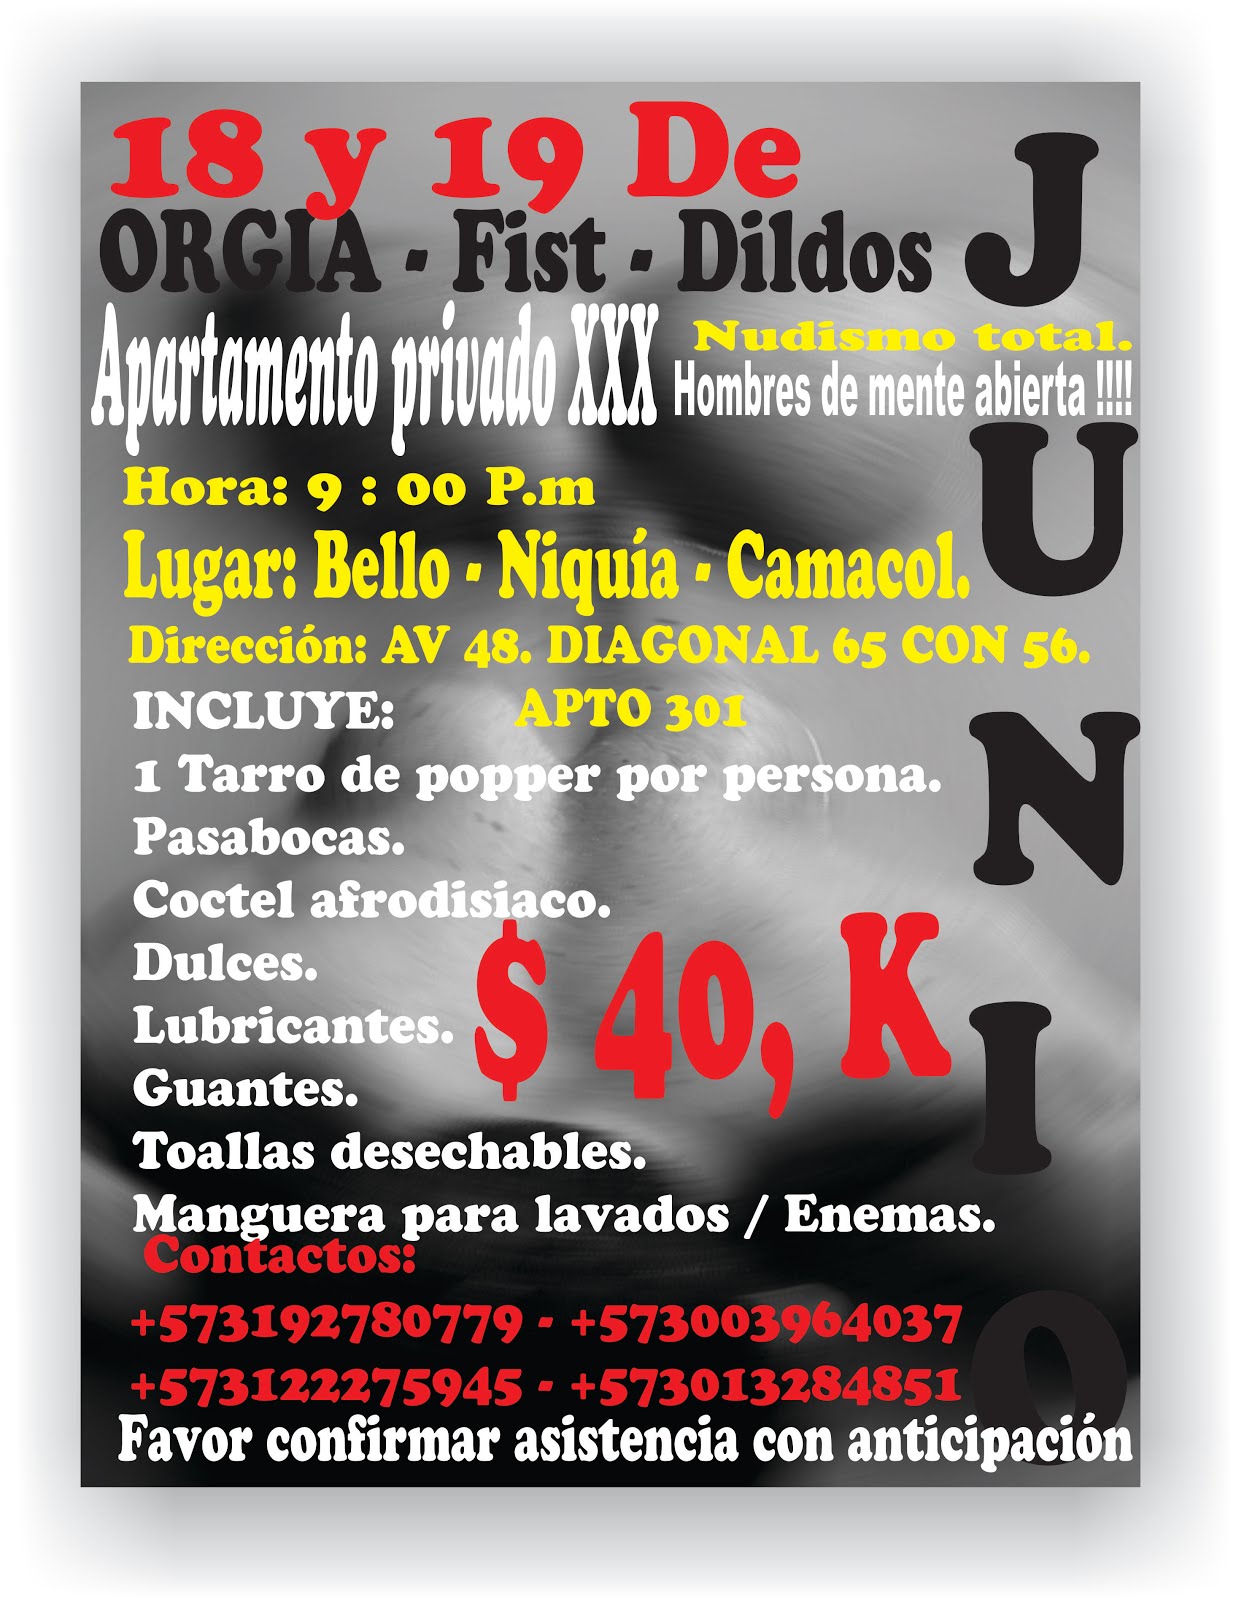 Medellin !!!! ACTIVOS, PASIVOS, VERSATILES !!!! CORDIALMENTE: Son Bienvenidos ………………. En Kueros !!!